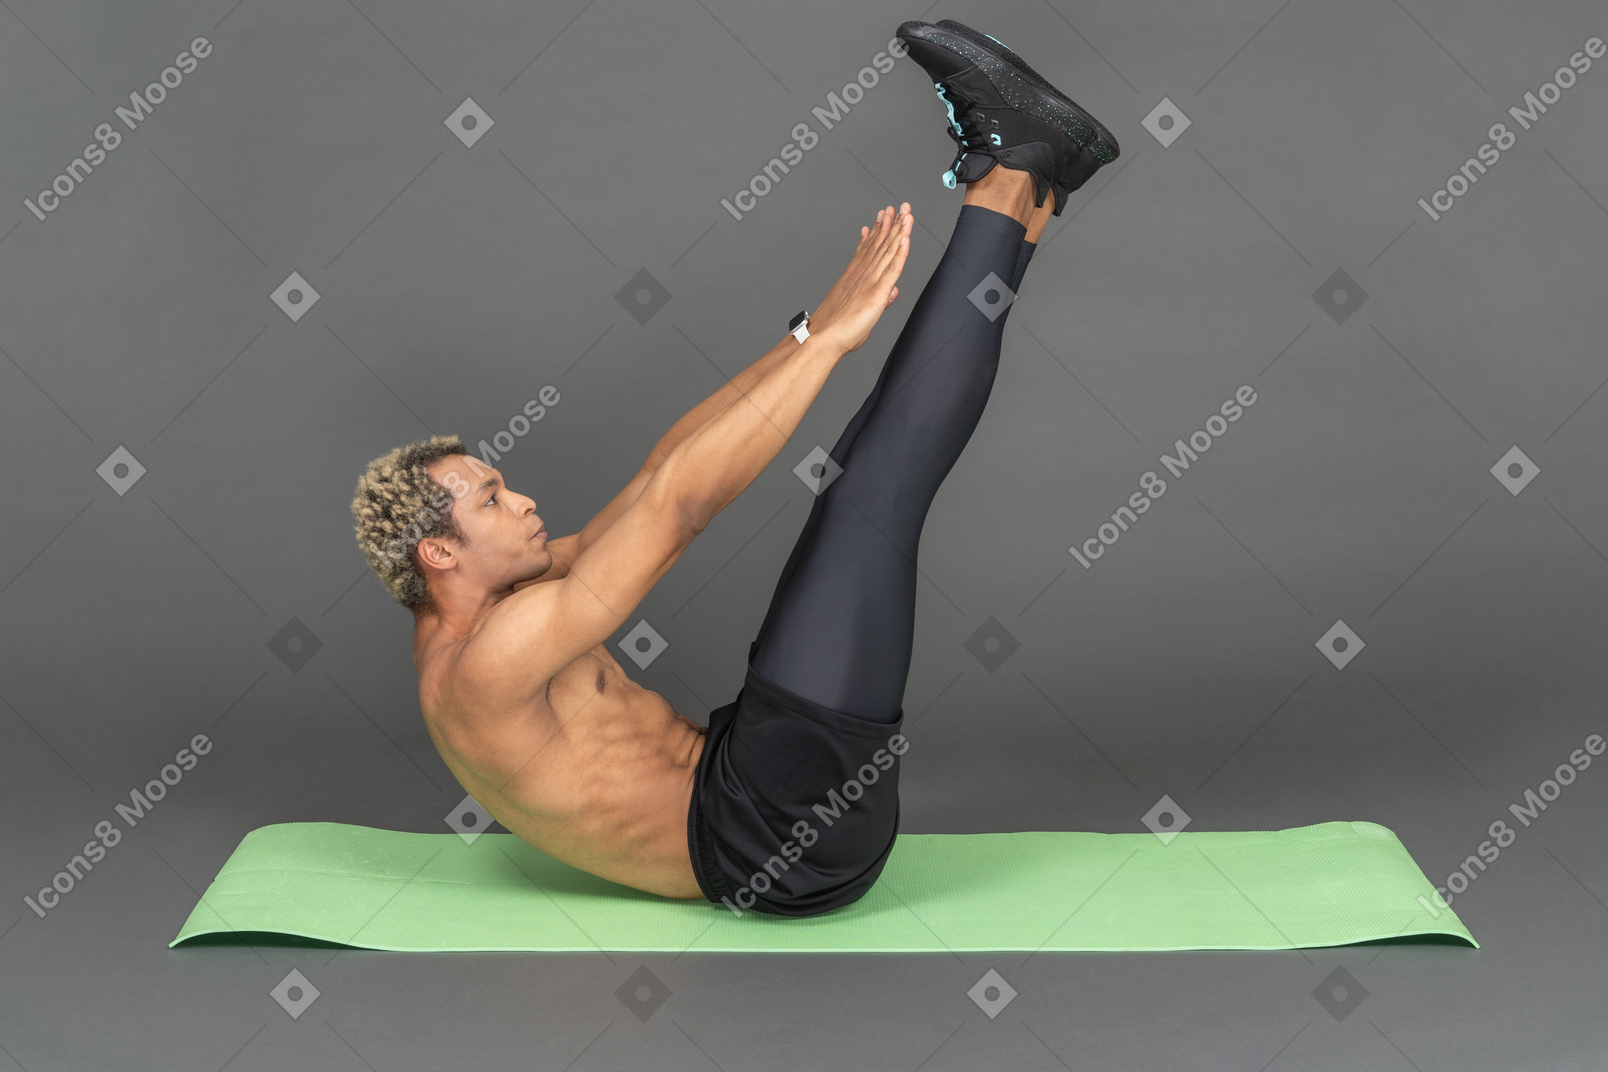 Mann macht dehnübungen auf einer yogamatte